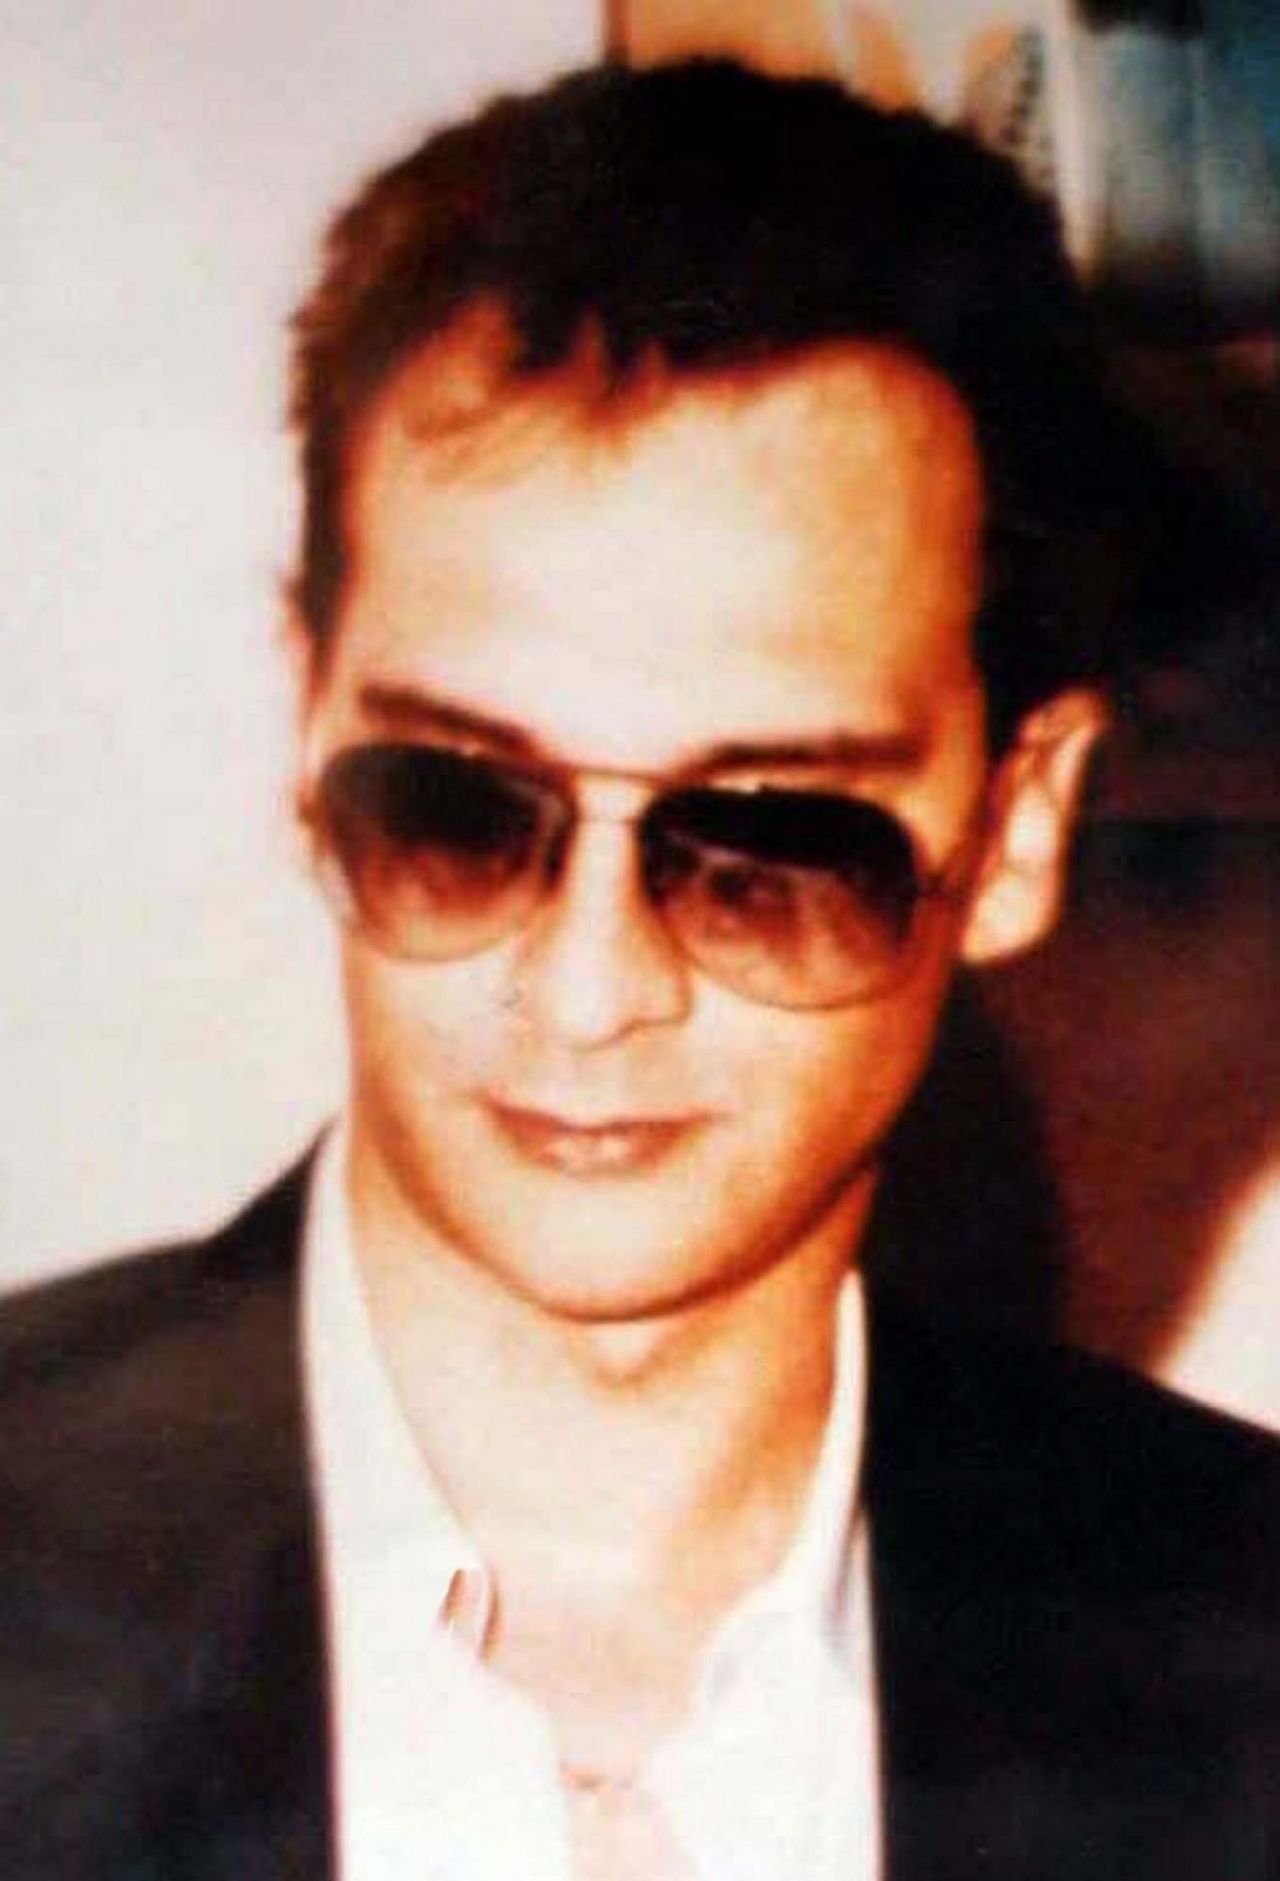 Noch ein Mafiosi, diesmal ein italienischer: Matteo Messina Denaro, auch genannt "Rolex" oder "Diabolik". Der Sizilianer war zeitweise Anführer der gerfürchteten "Cosa Nostra". Das Bild stammt aus jungen Jahren, heute ist er 59. Seit über 25 Jahren wurde er nicht mehr gesehen.